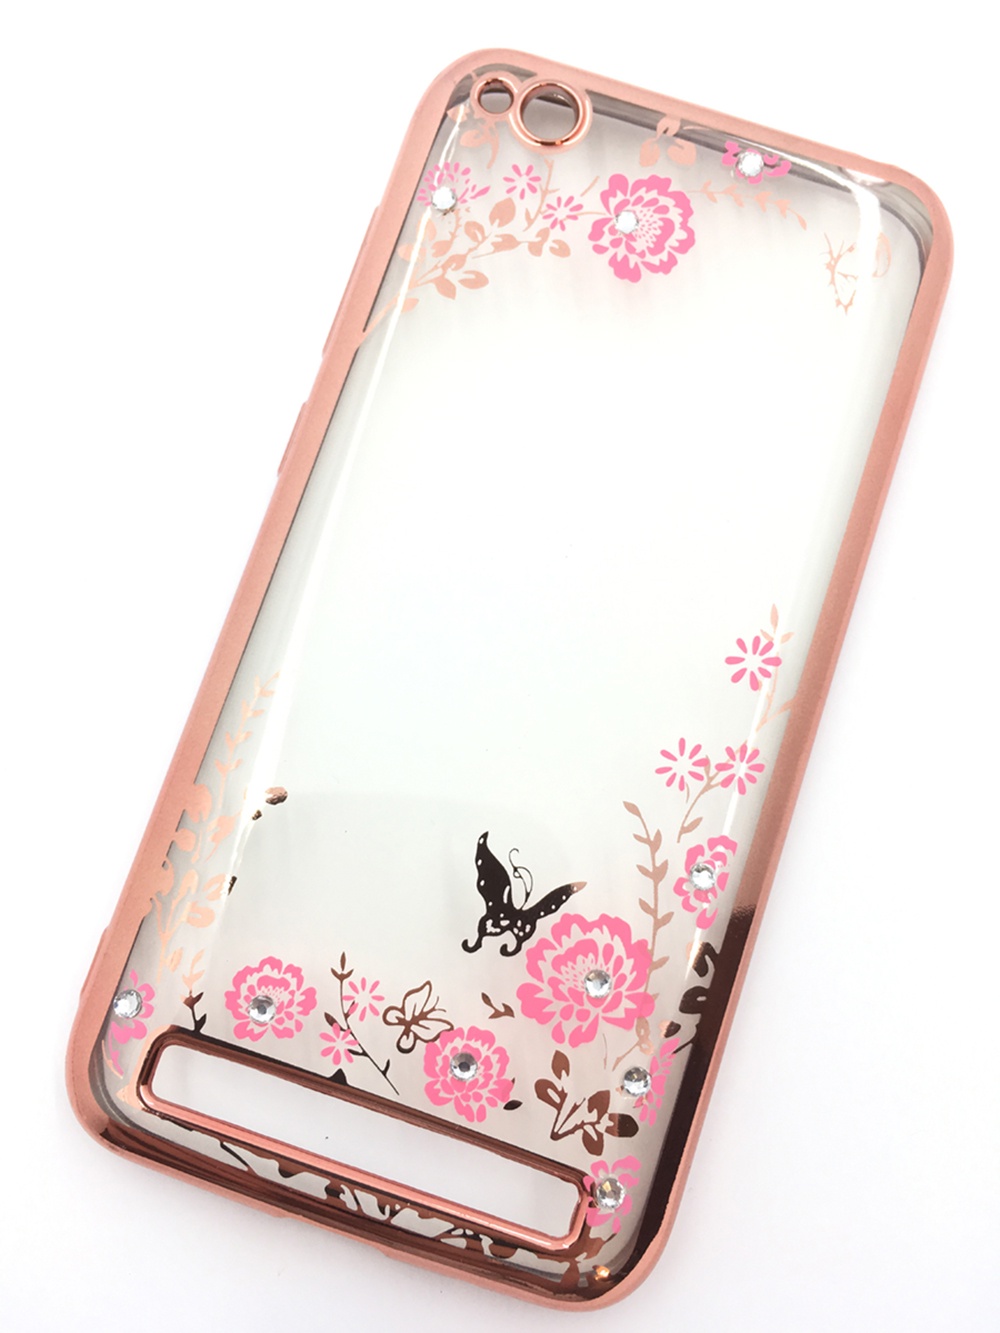 Чехол для сотового телефона Мобильная мода Xiaomi Redmi 5A Силиконовая, прозрачная накладка со стразами, 6 995R, розовый